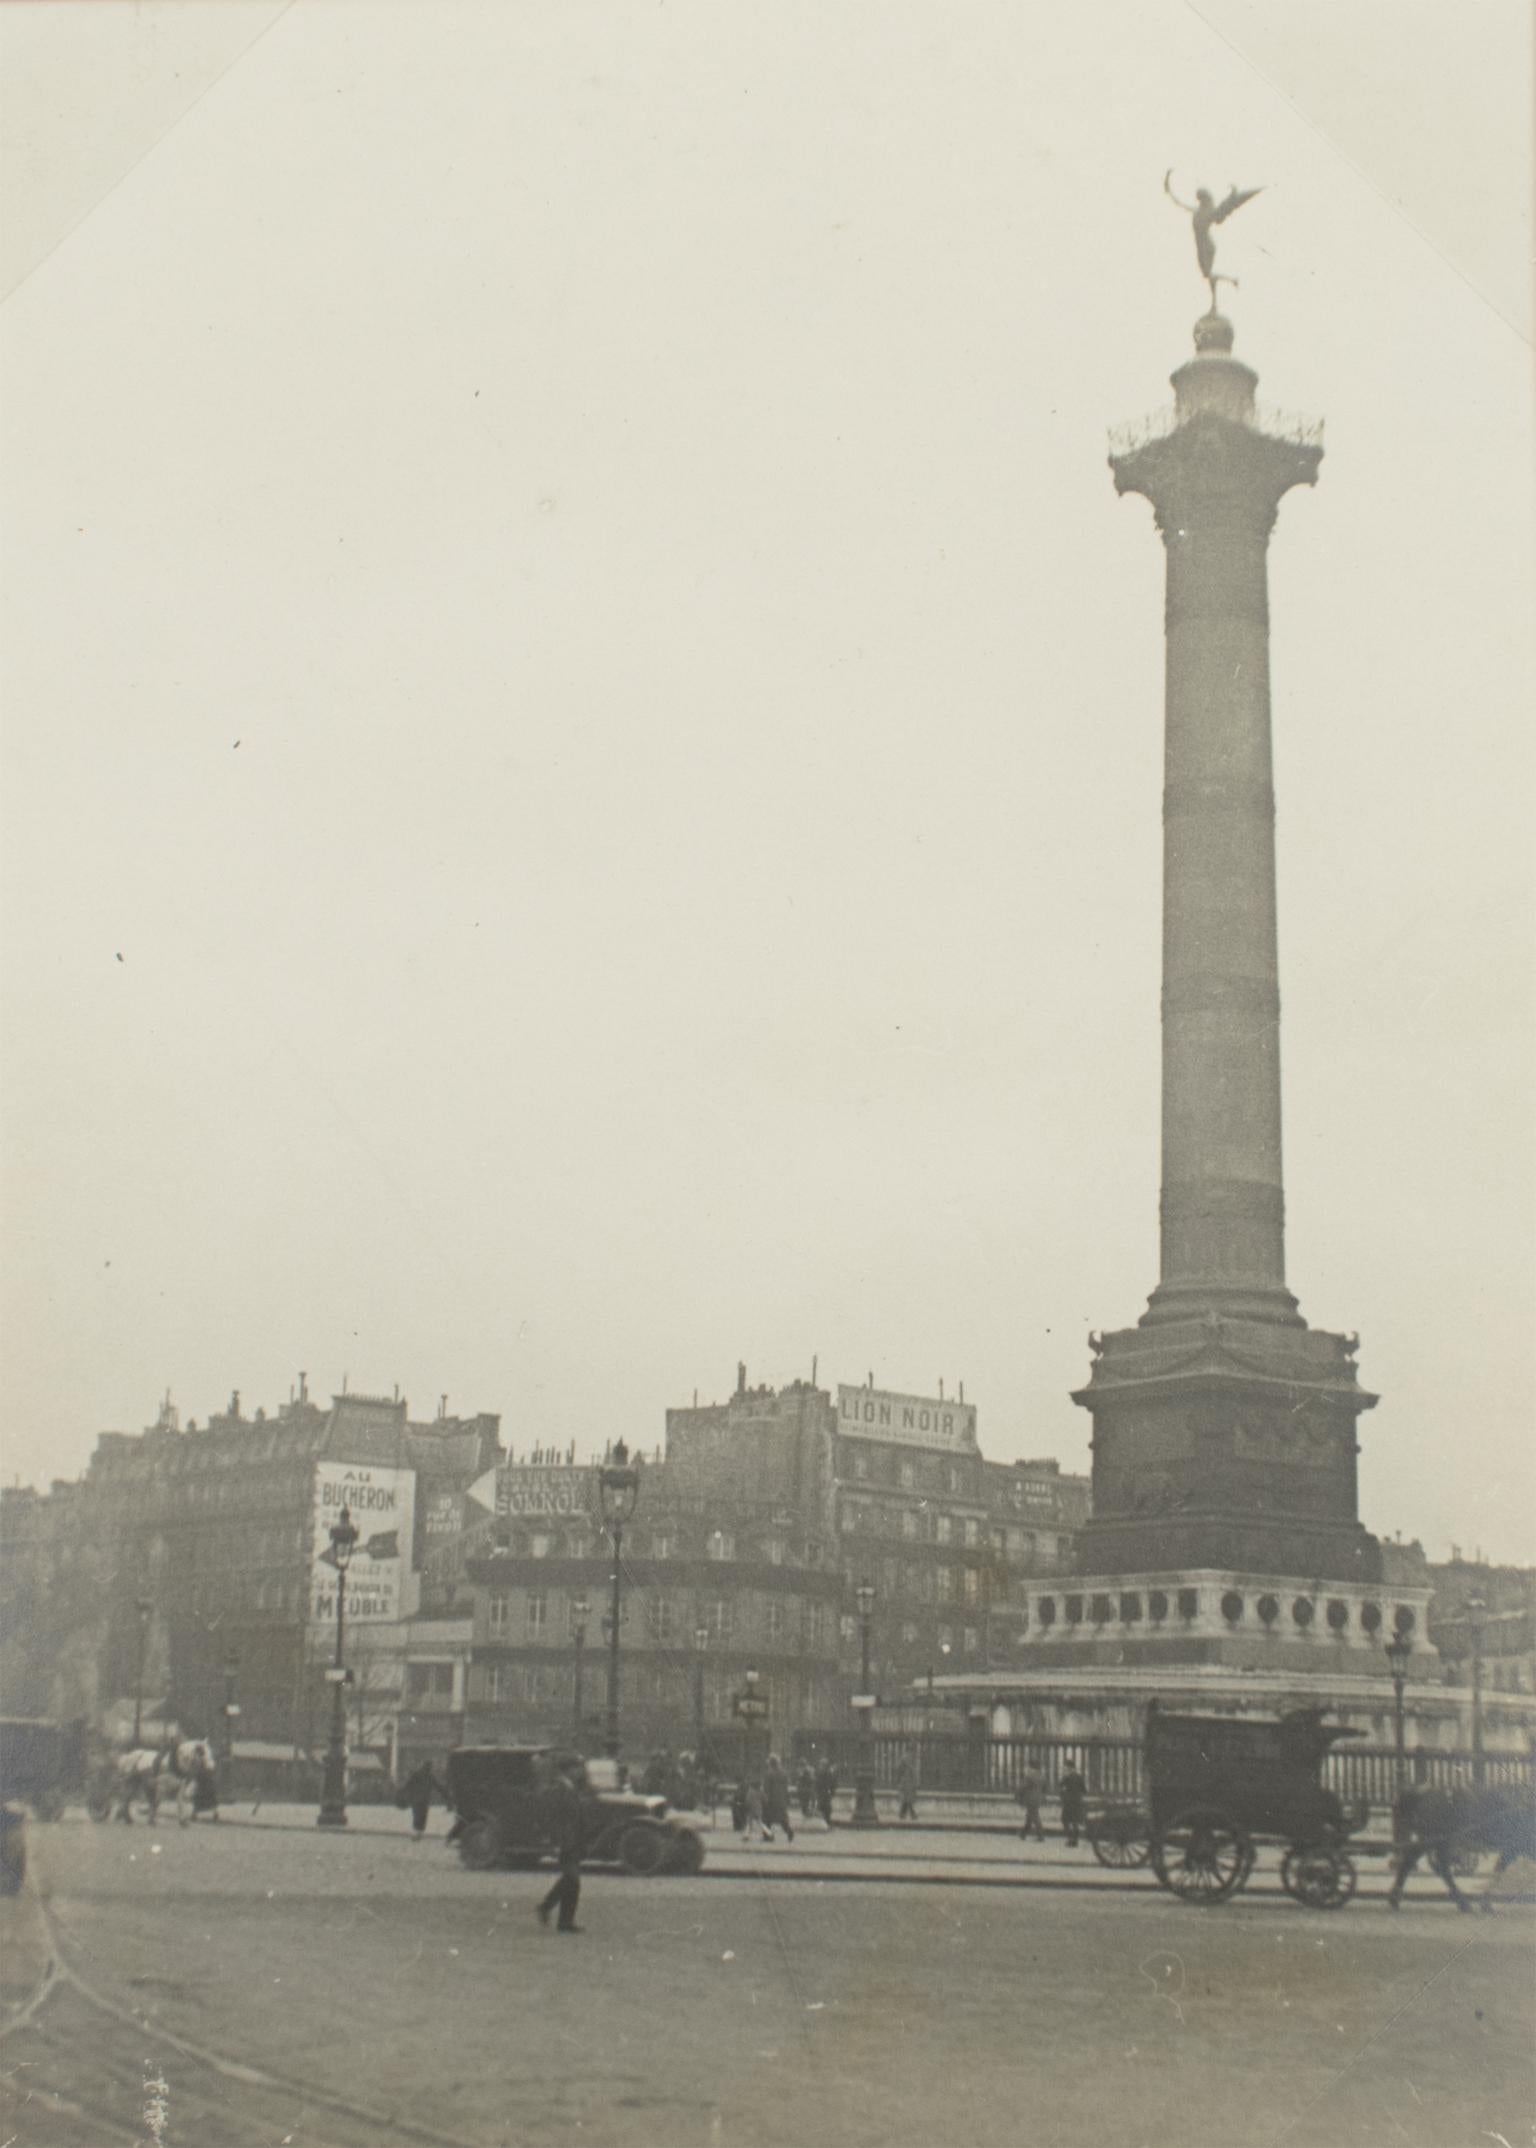 Unknown Landscape Photograph - Place de la Bastille Paris, 1928 - Silver Gelatin Black and White Photography